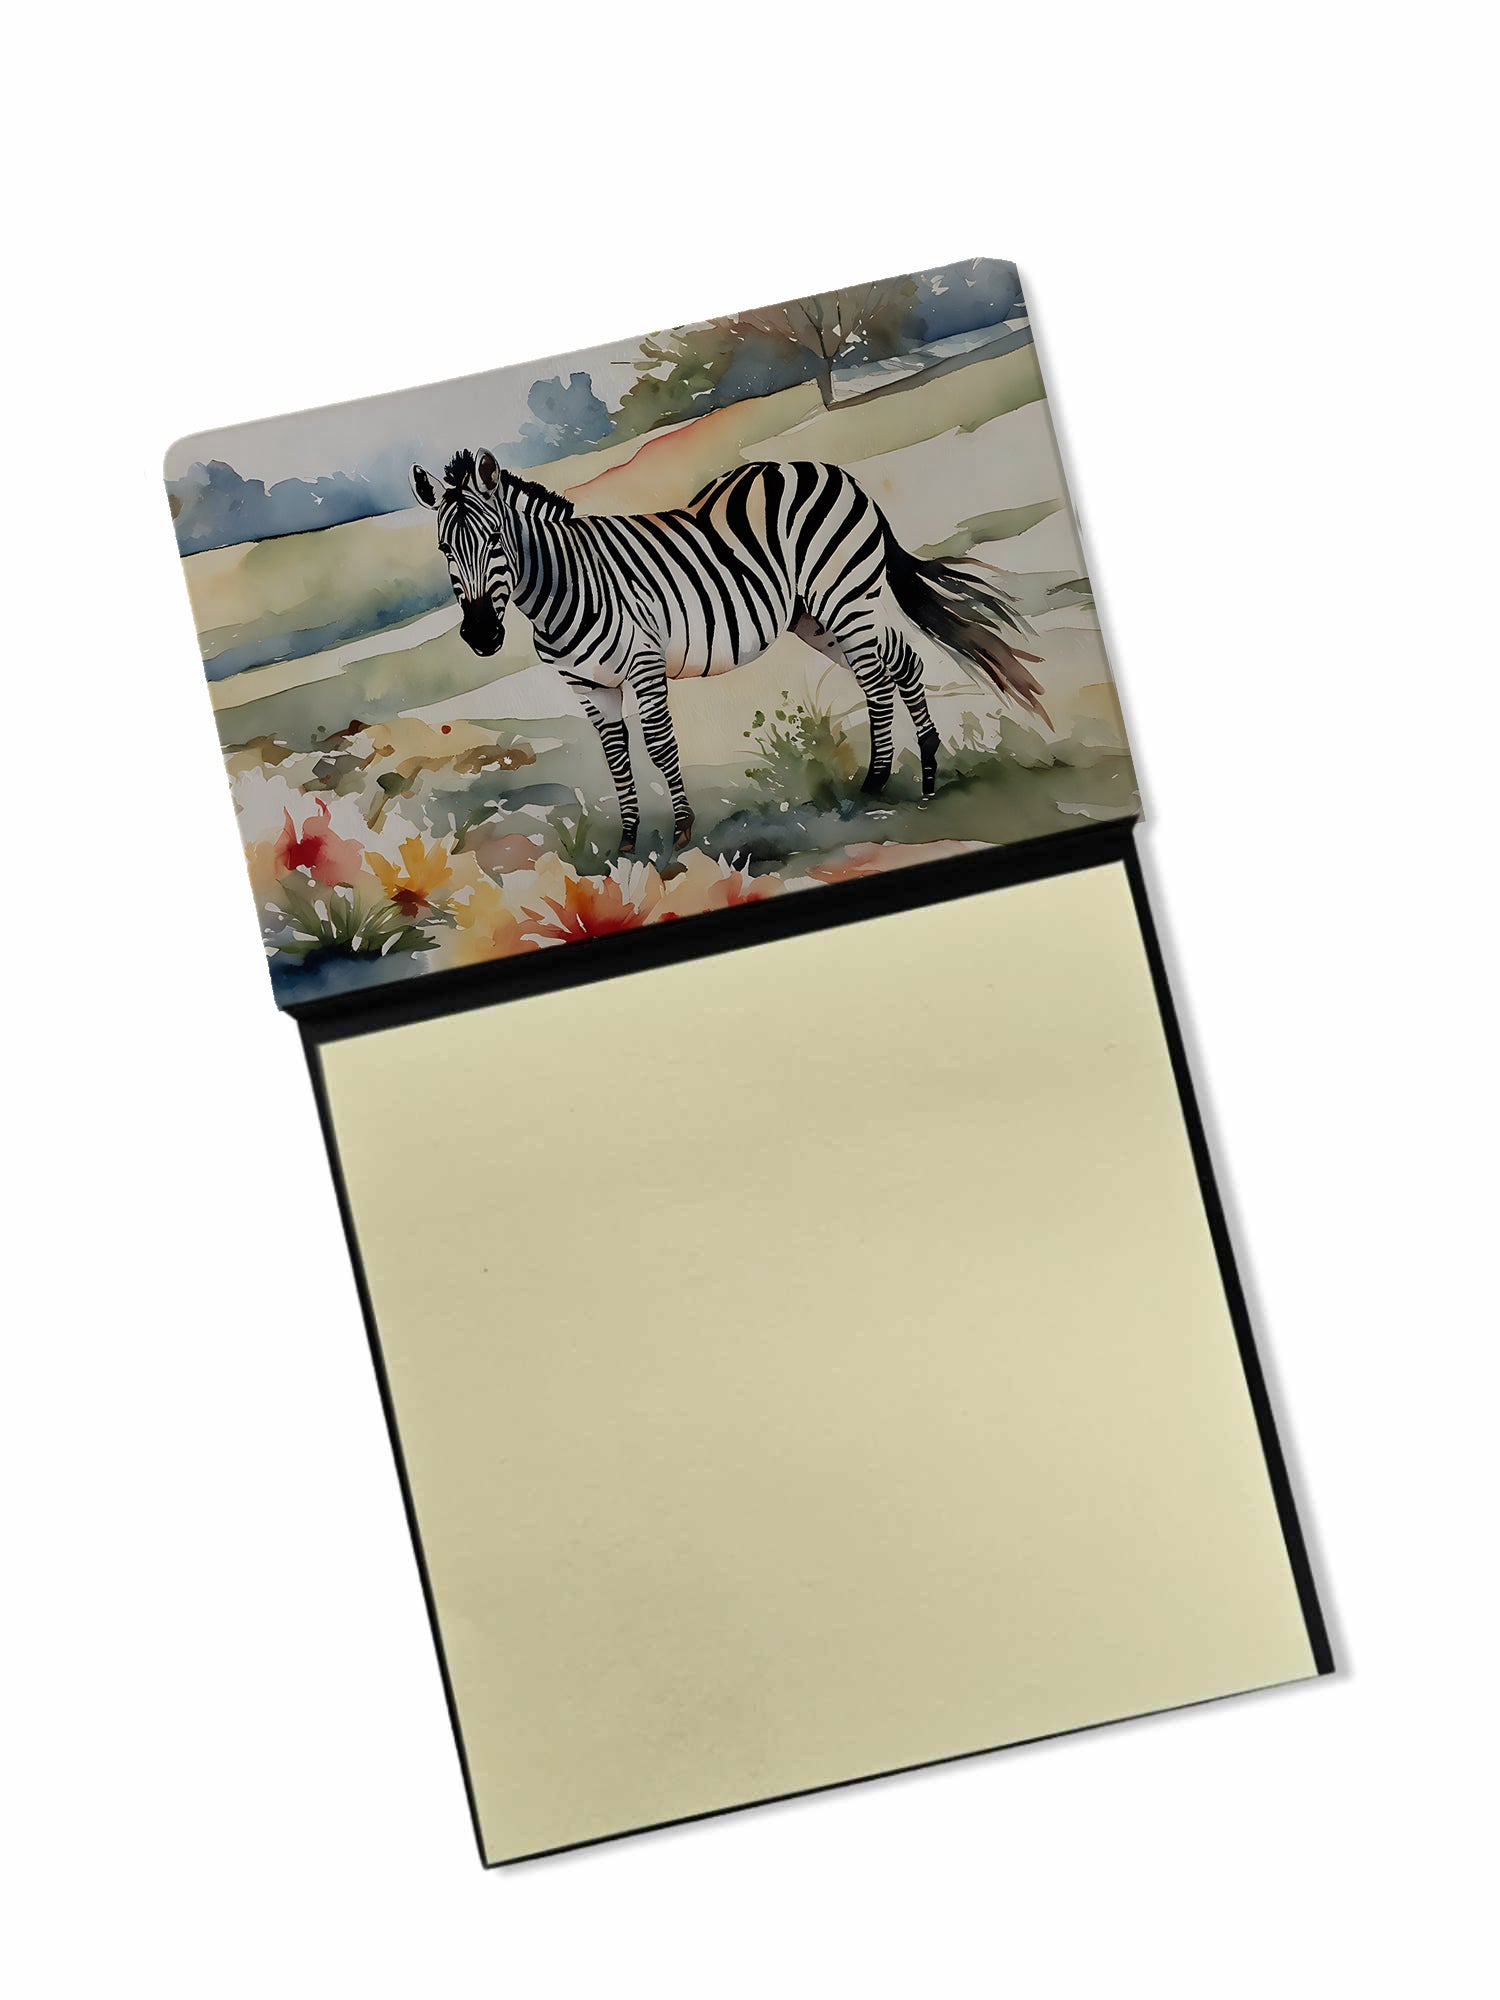 Buy this Zebra Sticky Note Holder